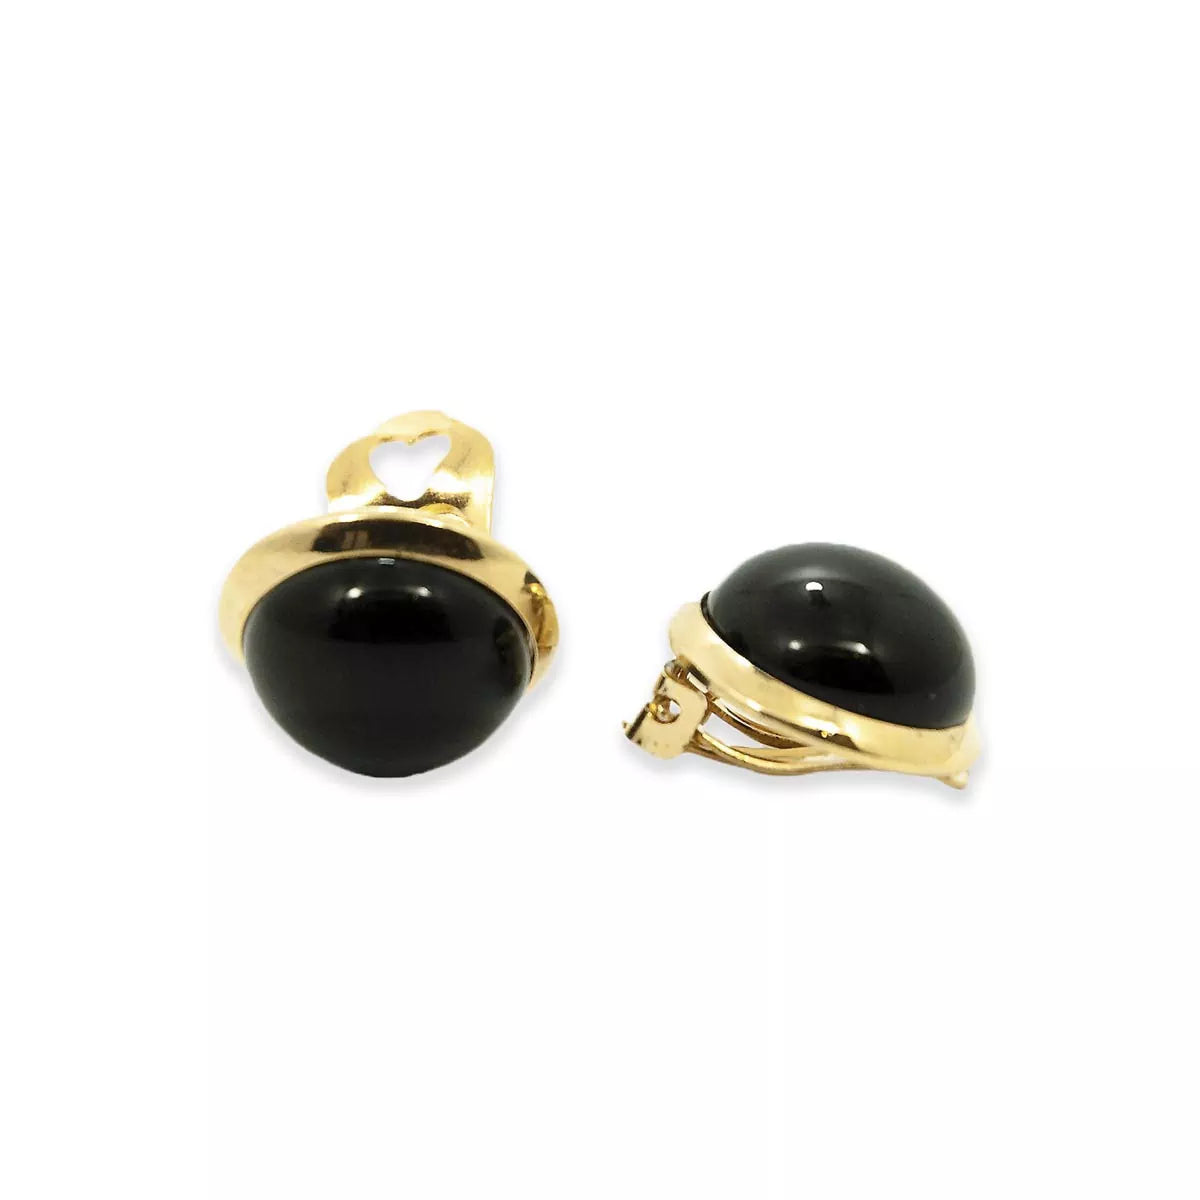 Black button earrings